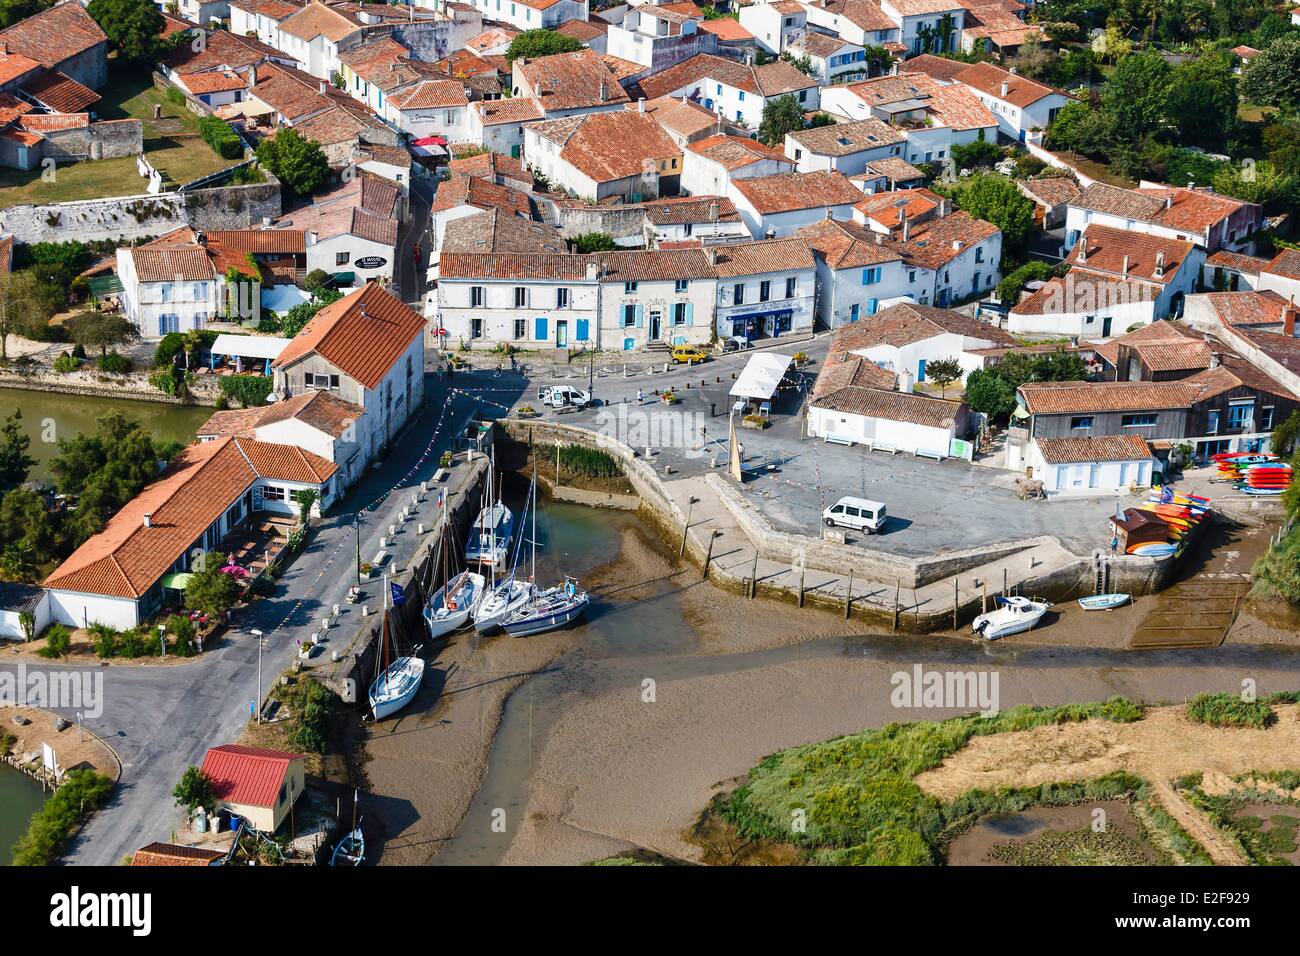 France Charente Maritime Mornac sur Seudre labelled Les Plus Beaux Villages de France (The Most Beautiful Villages of France) Stock Photo